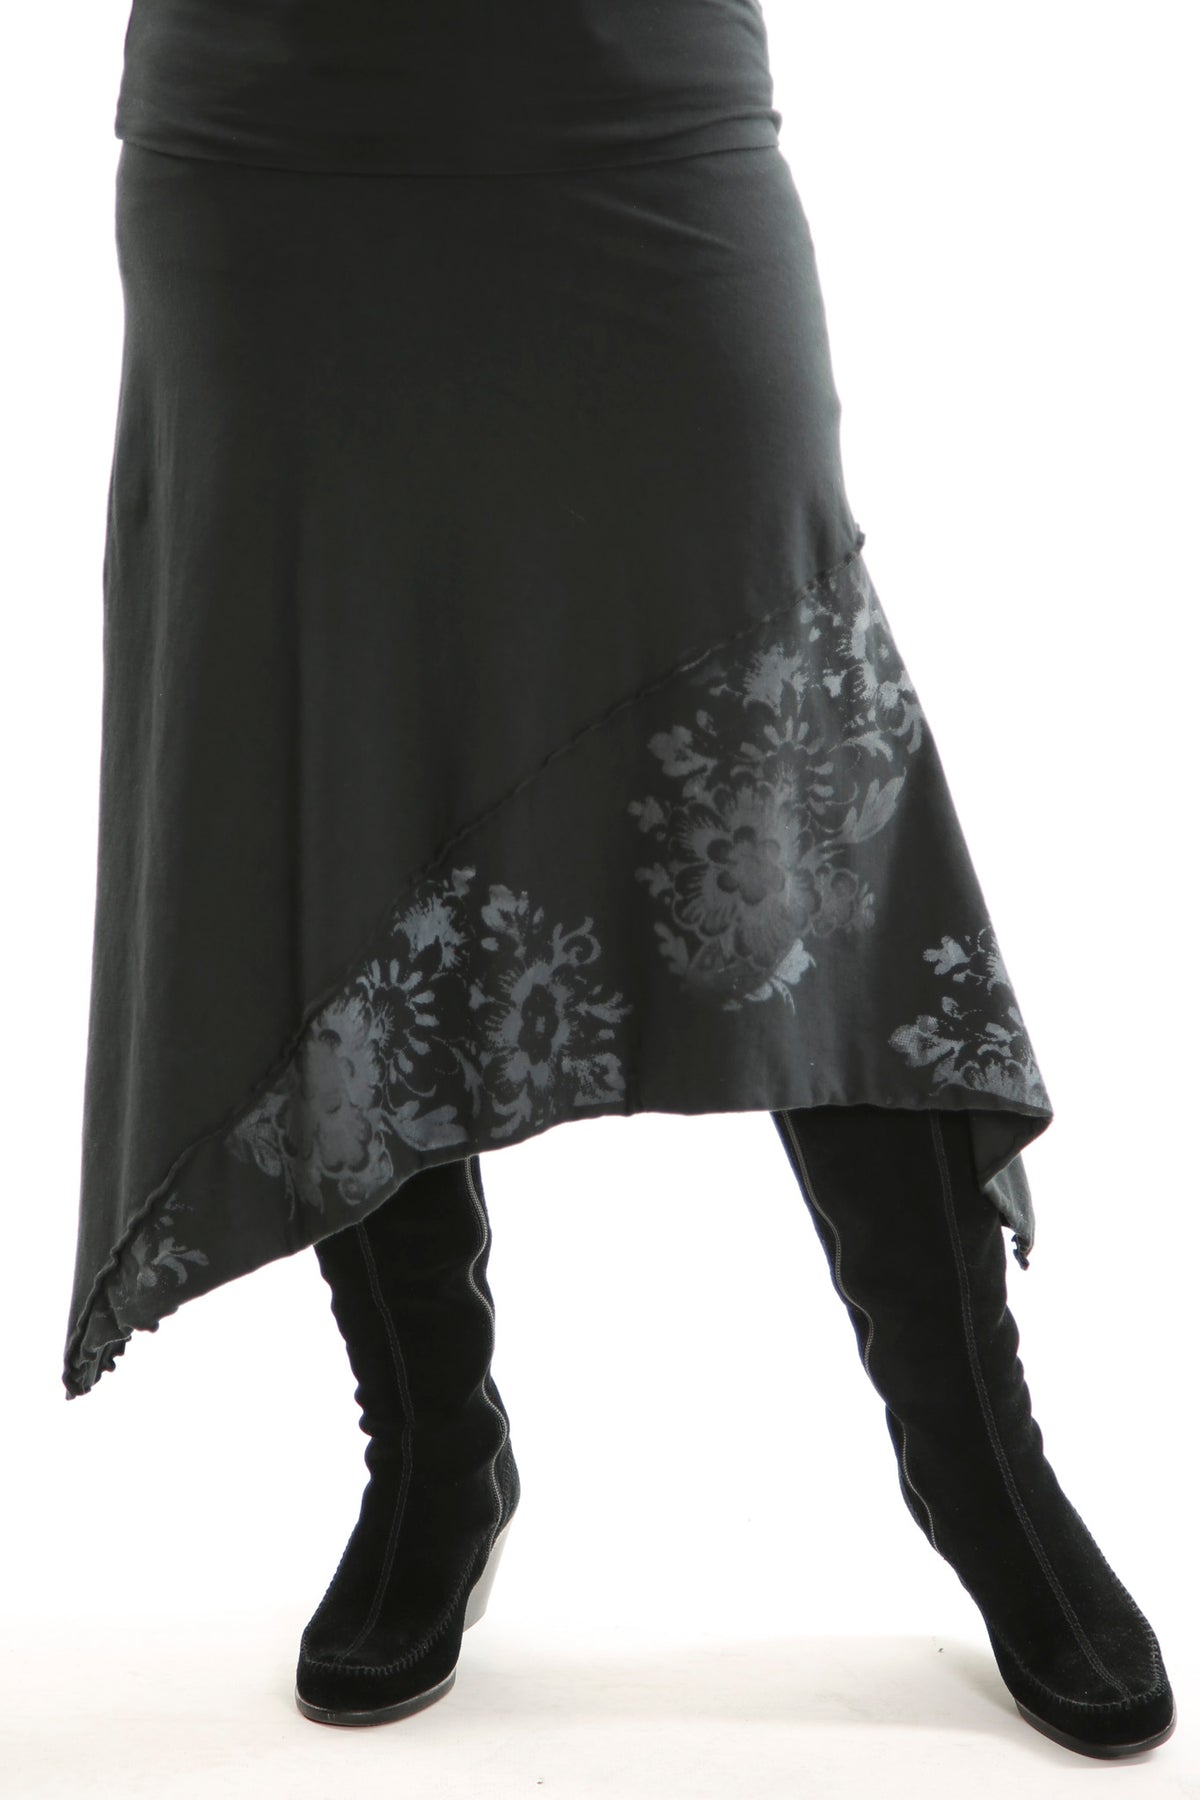 4130 Slant Layer Skirt Black Antique Floral